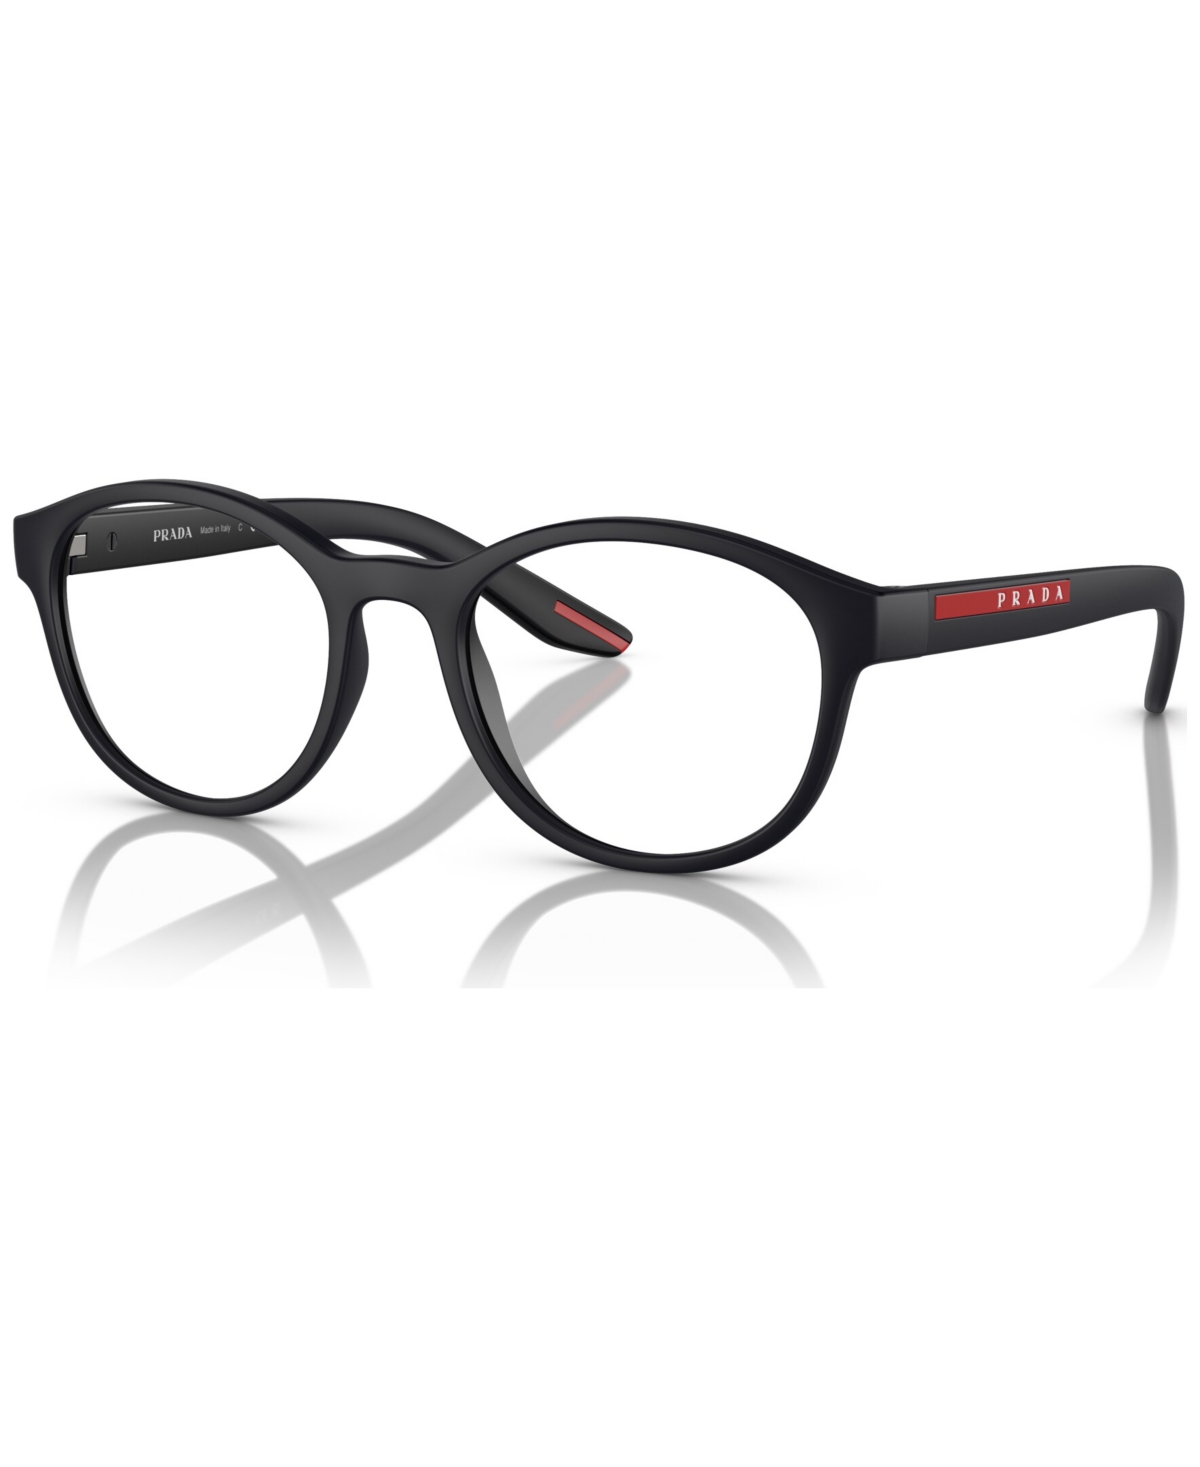 Men's Eyeglasses, Ps 07PV 53 - Black Rubber